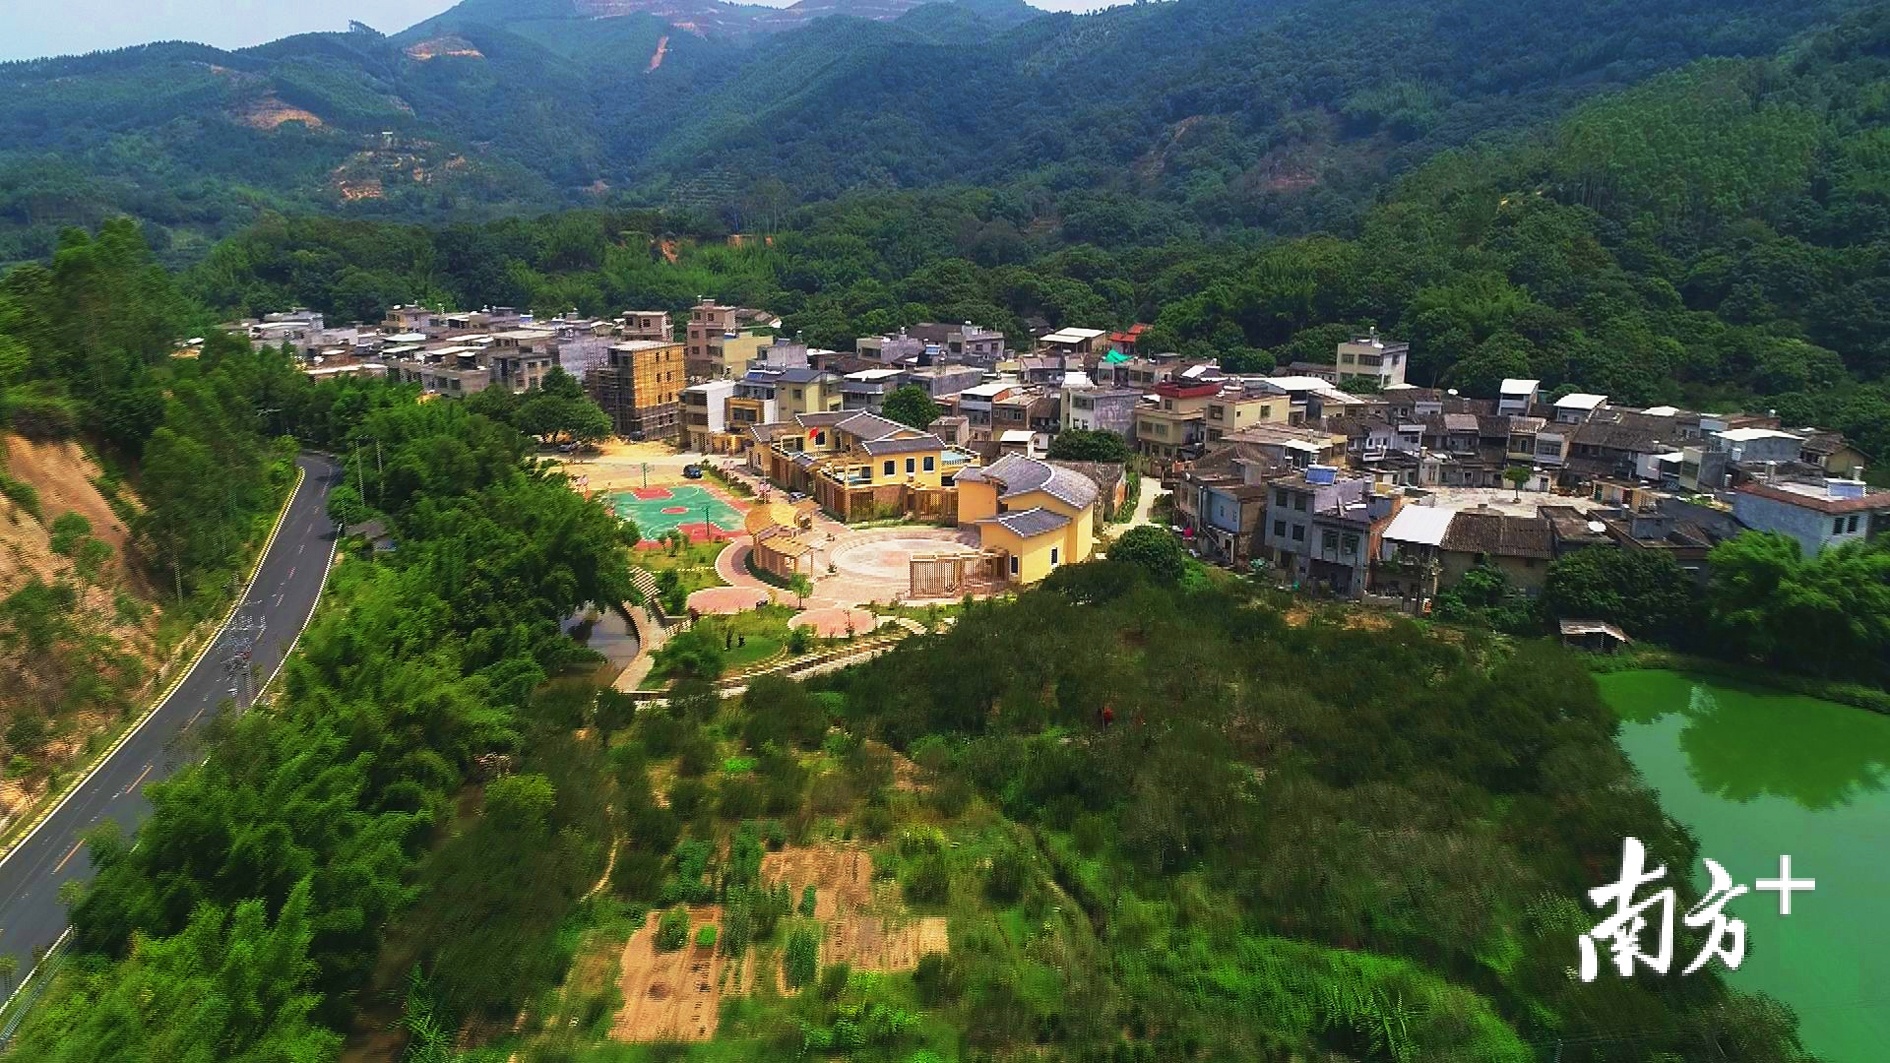 绿意盎然的饶平县东明村。